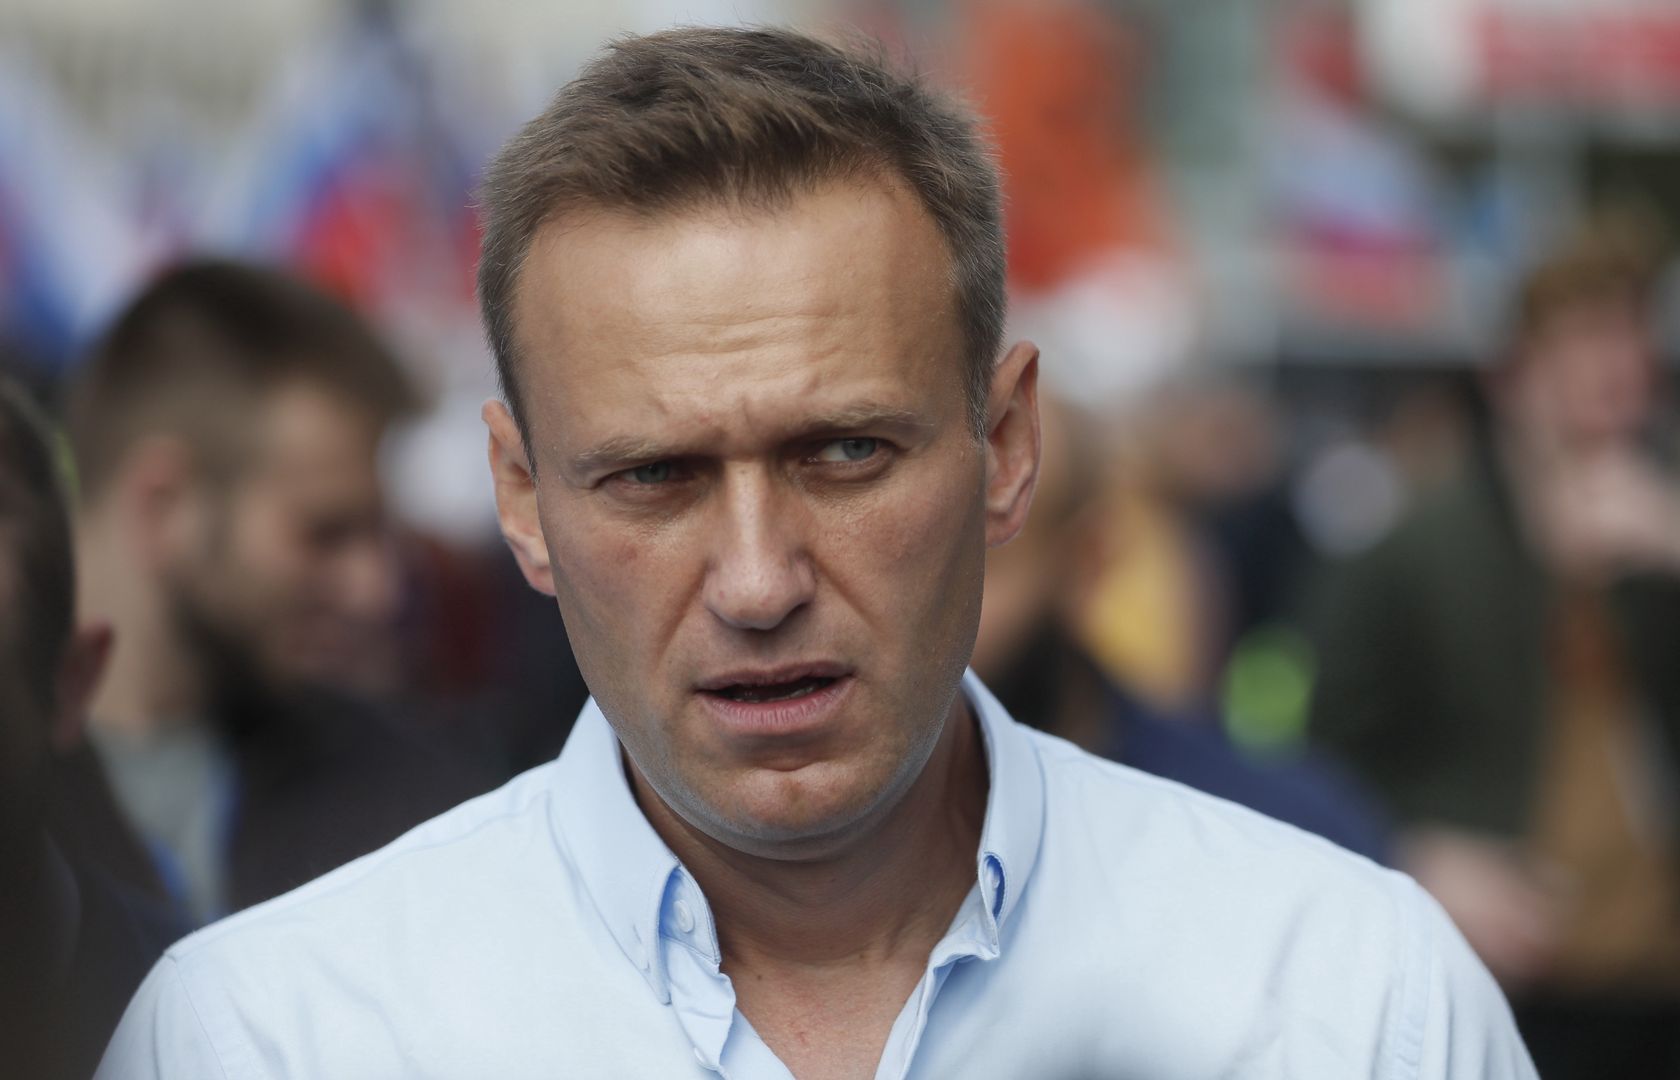 Nowe informacje w sprawie Nawalnego. Wiedzieli wszystko